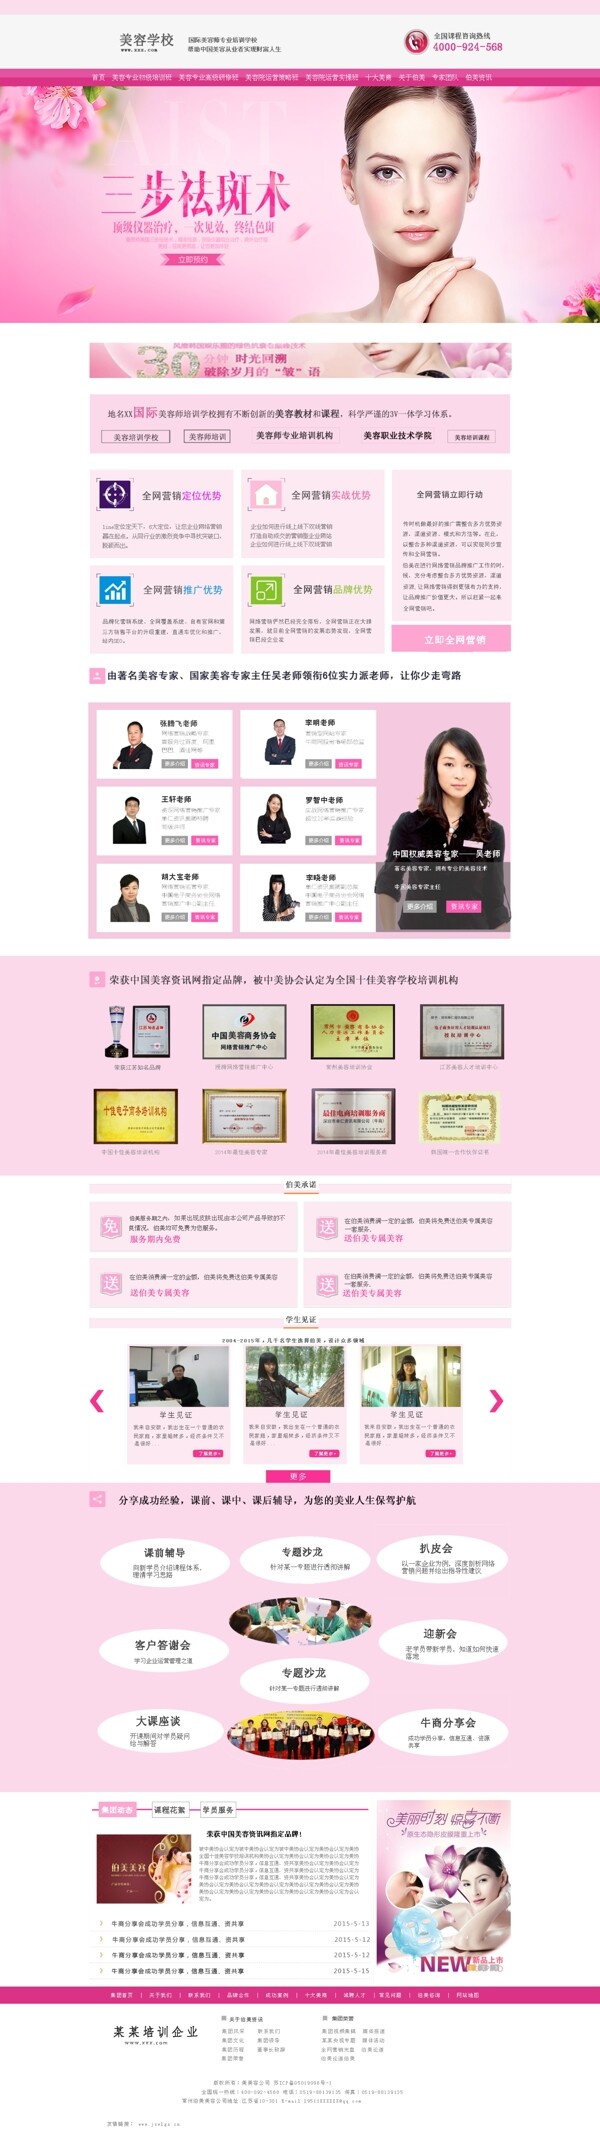 粉色清新美容网站首页设计